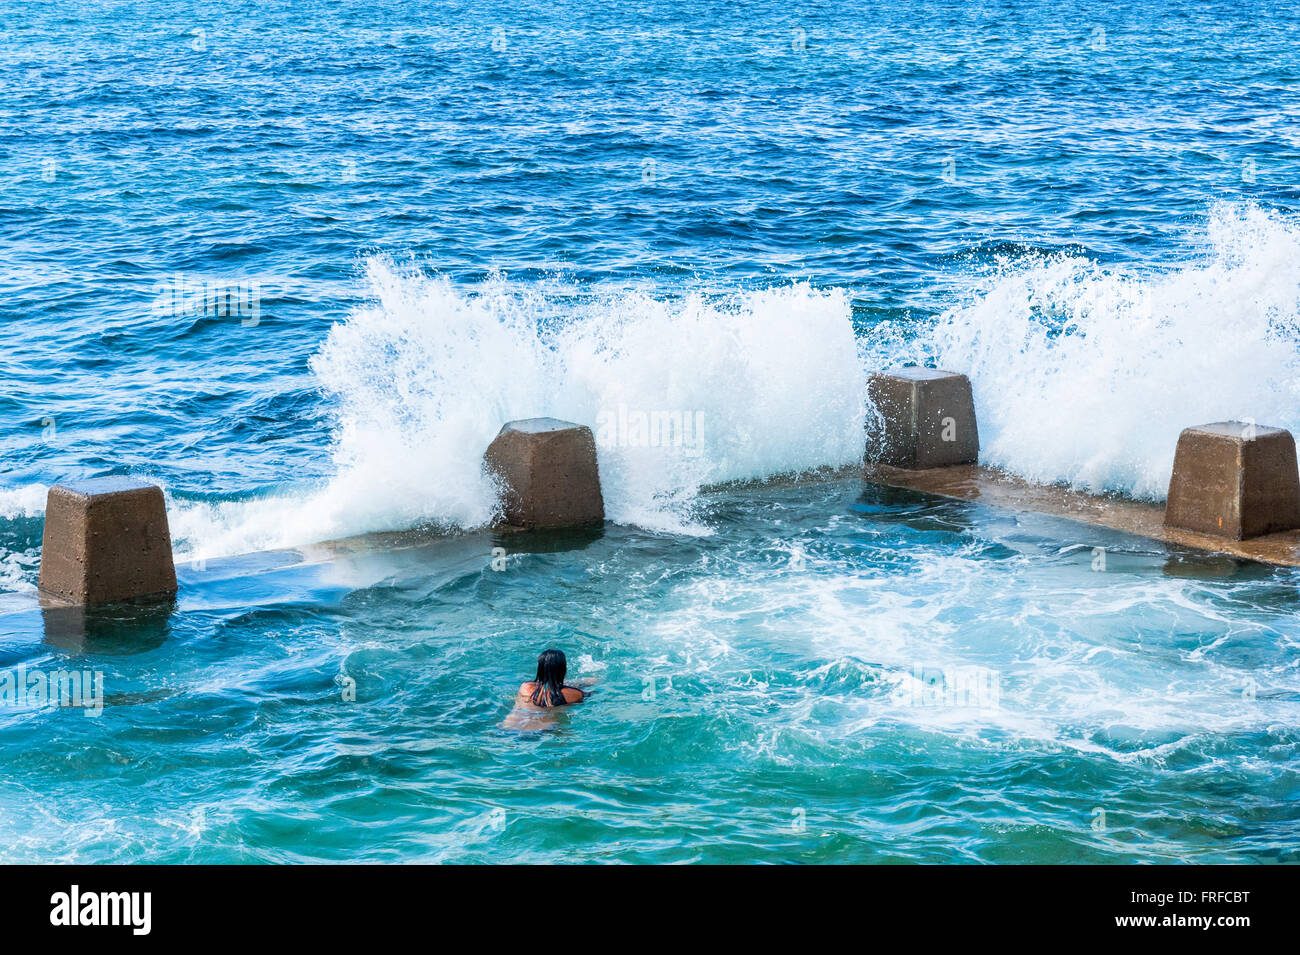 Temprano en la mañana los nadadores en la piscina piscina de roca de Coogee Beach Sydney, New South Wales Australia Foto de stock